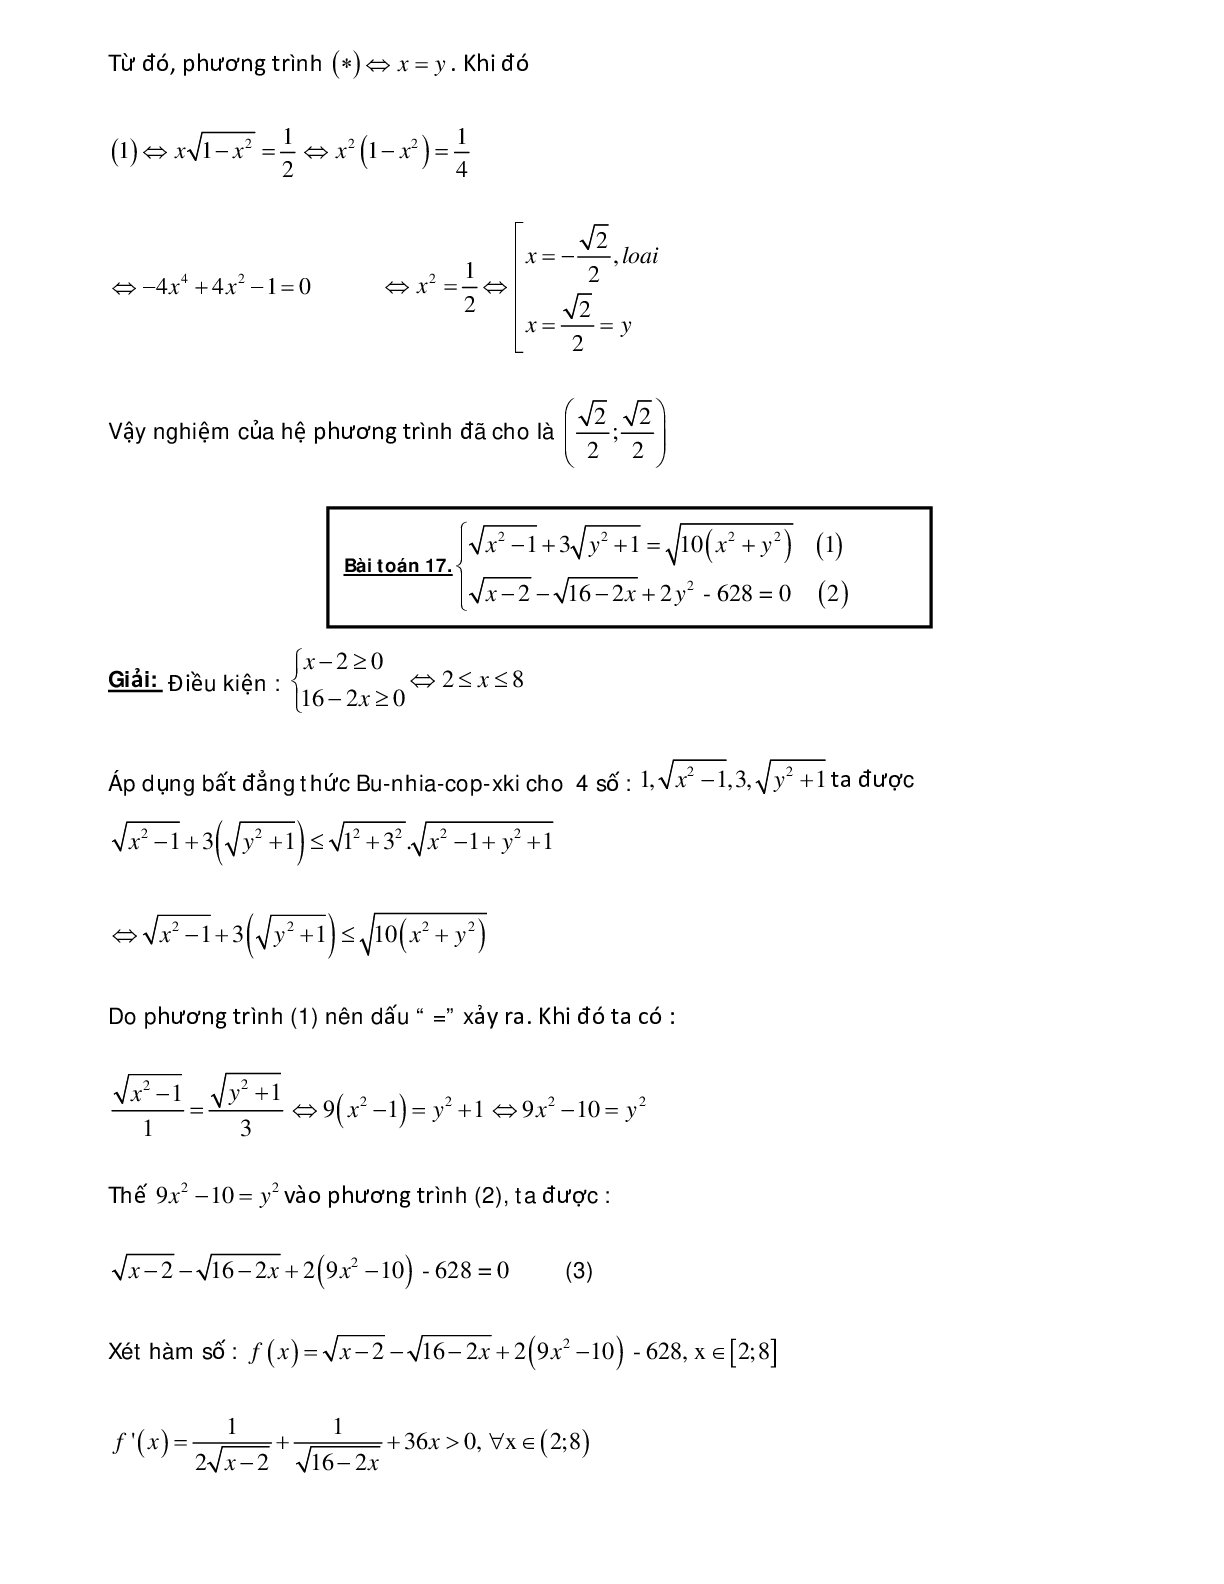 Bài tập sử dụng phương pháp hàm số để giải hệ phương trình - có đáp án chi tiết (trang 3)